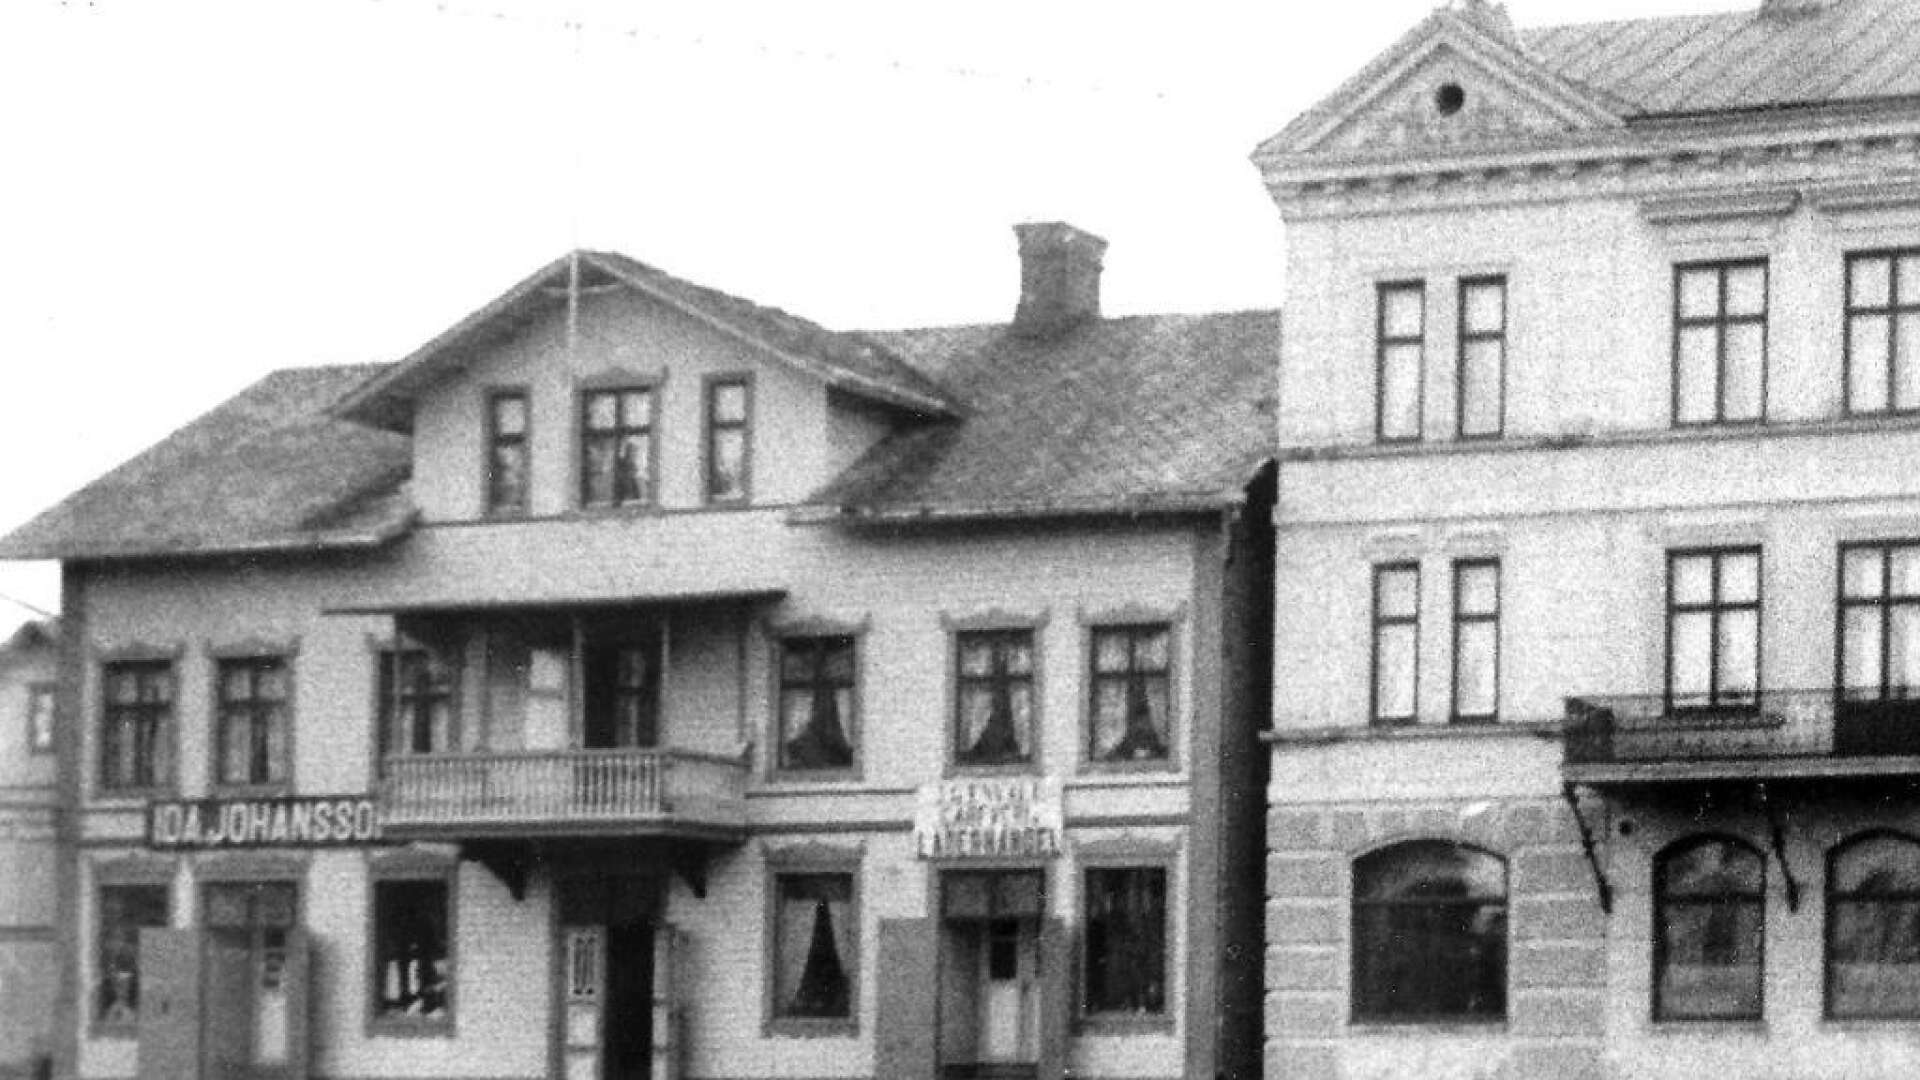 Vid Stortorget kunde man på en skylt läsa ”J G Envall garveri läderaffär”. Huset kom att kallas Envallshuset. Det revs 1965.